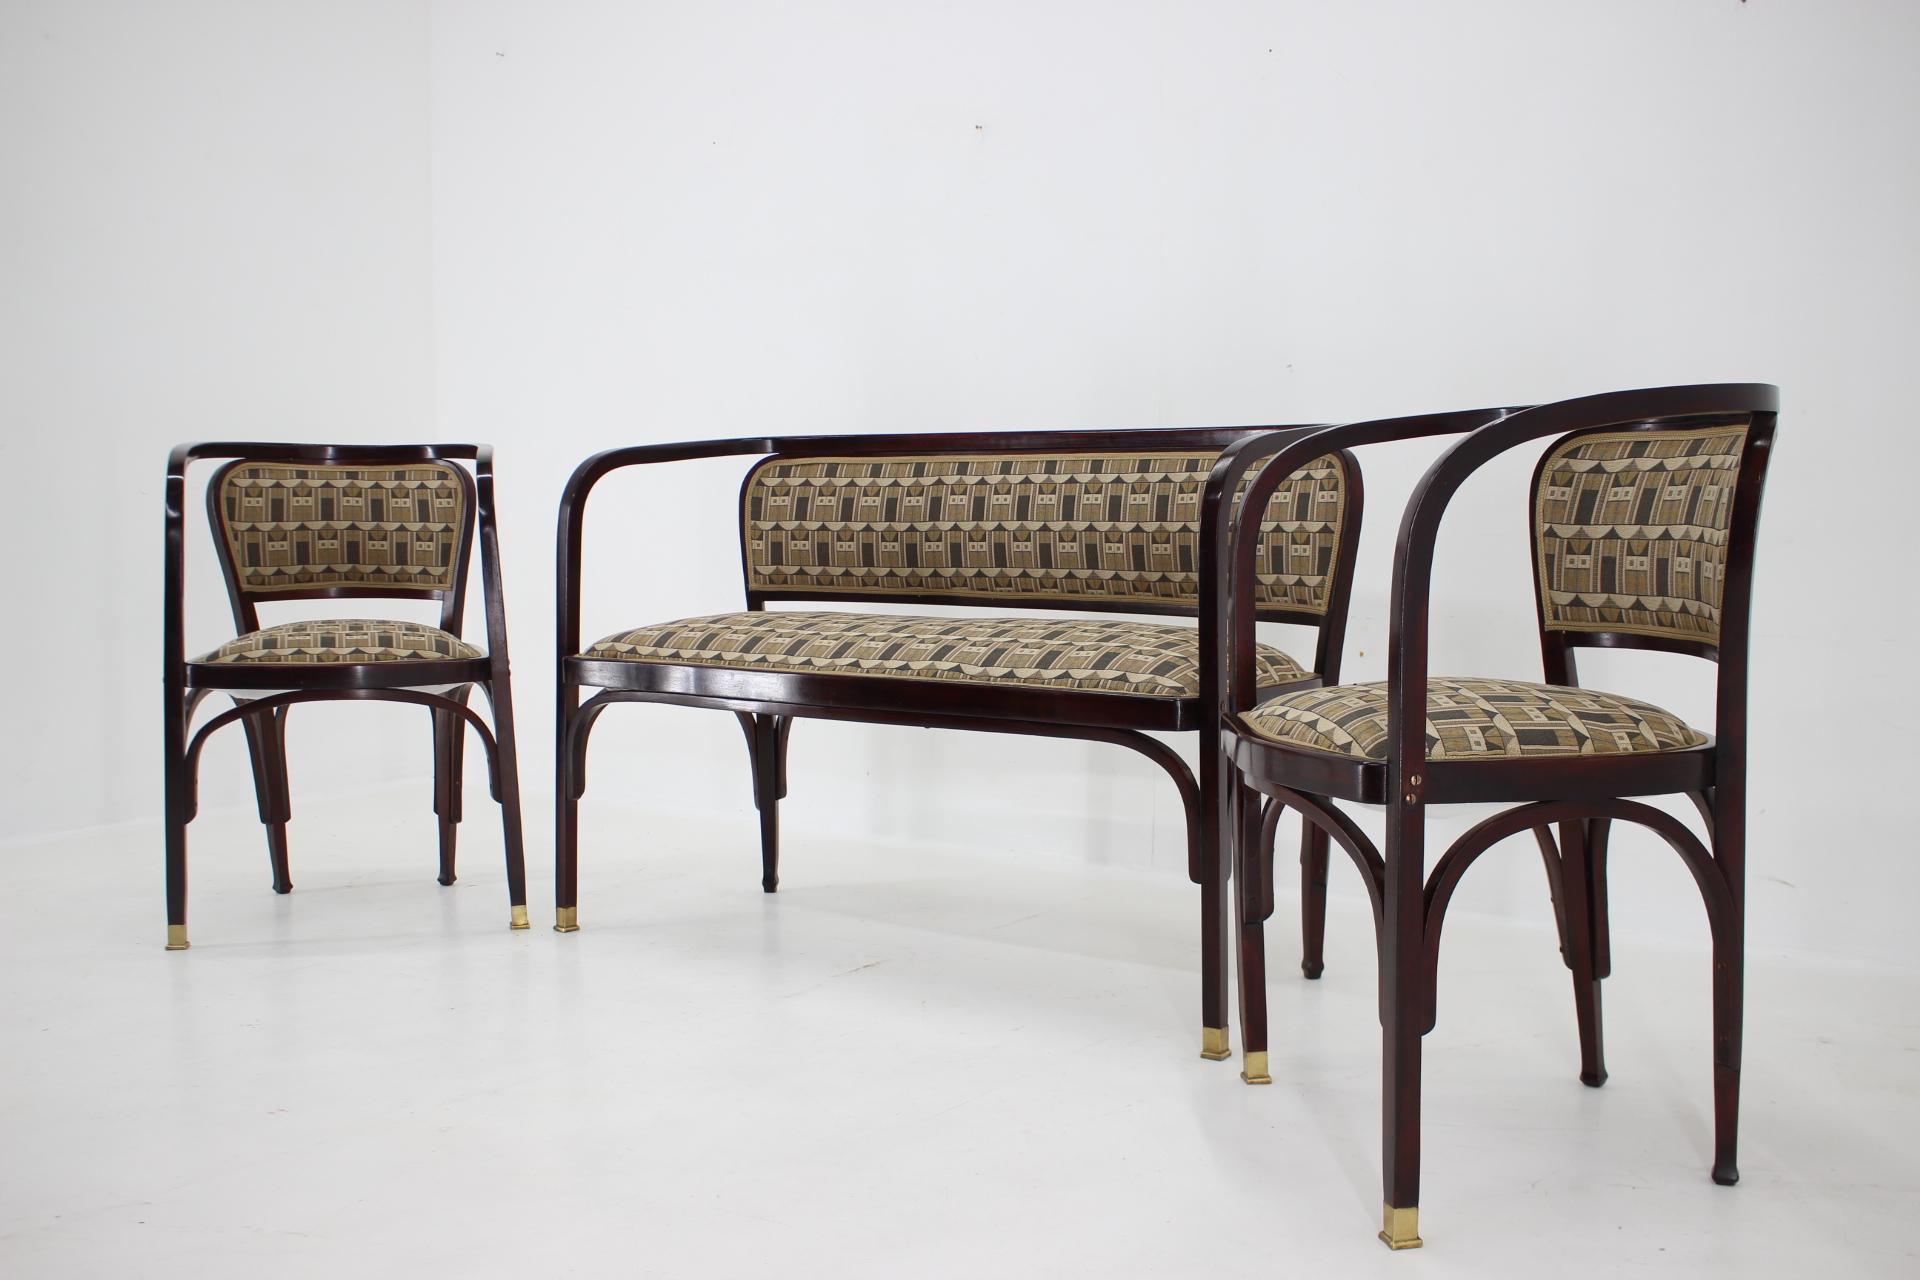 Secession-Sofa und zwei Sessel von Gustav Siegel für J.J.Kohn, restauriert  (Art nouveau)